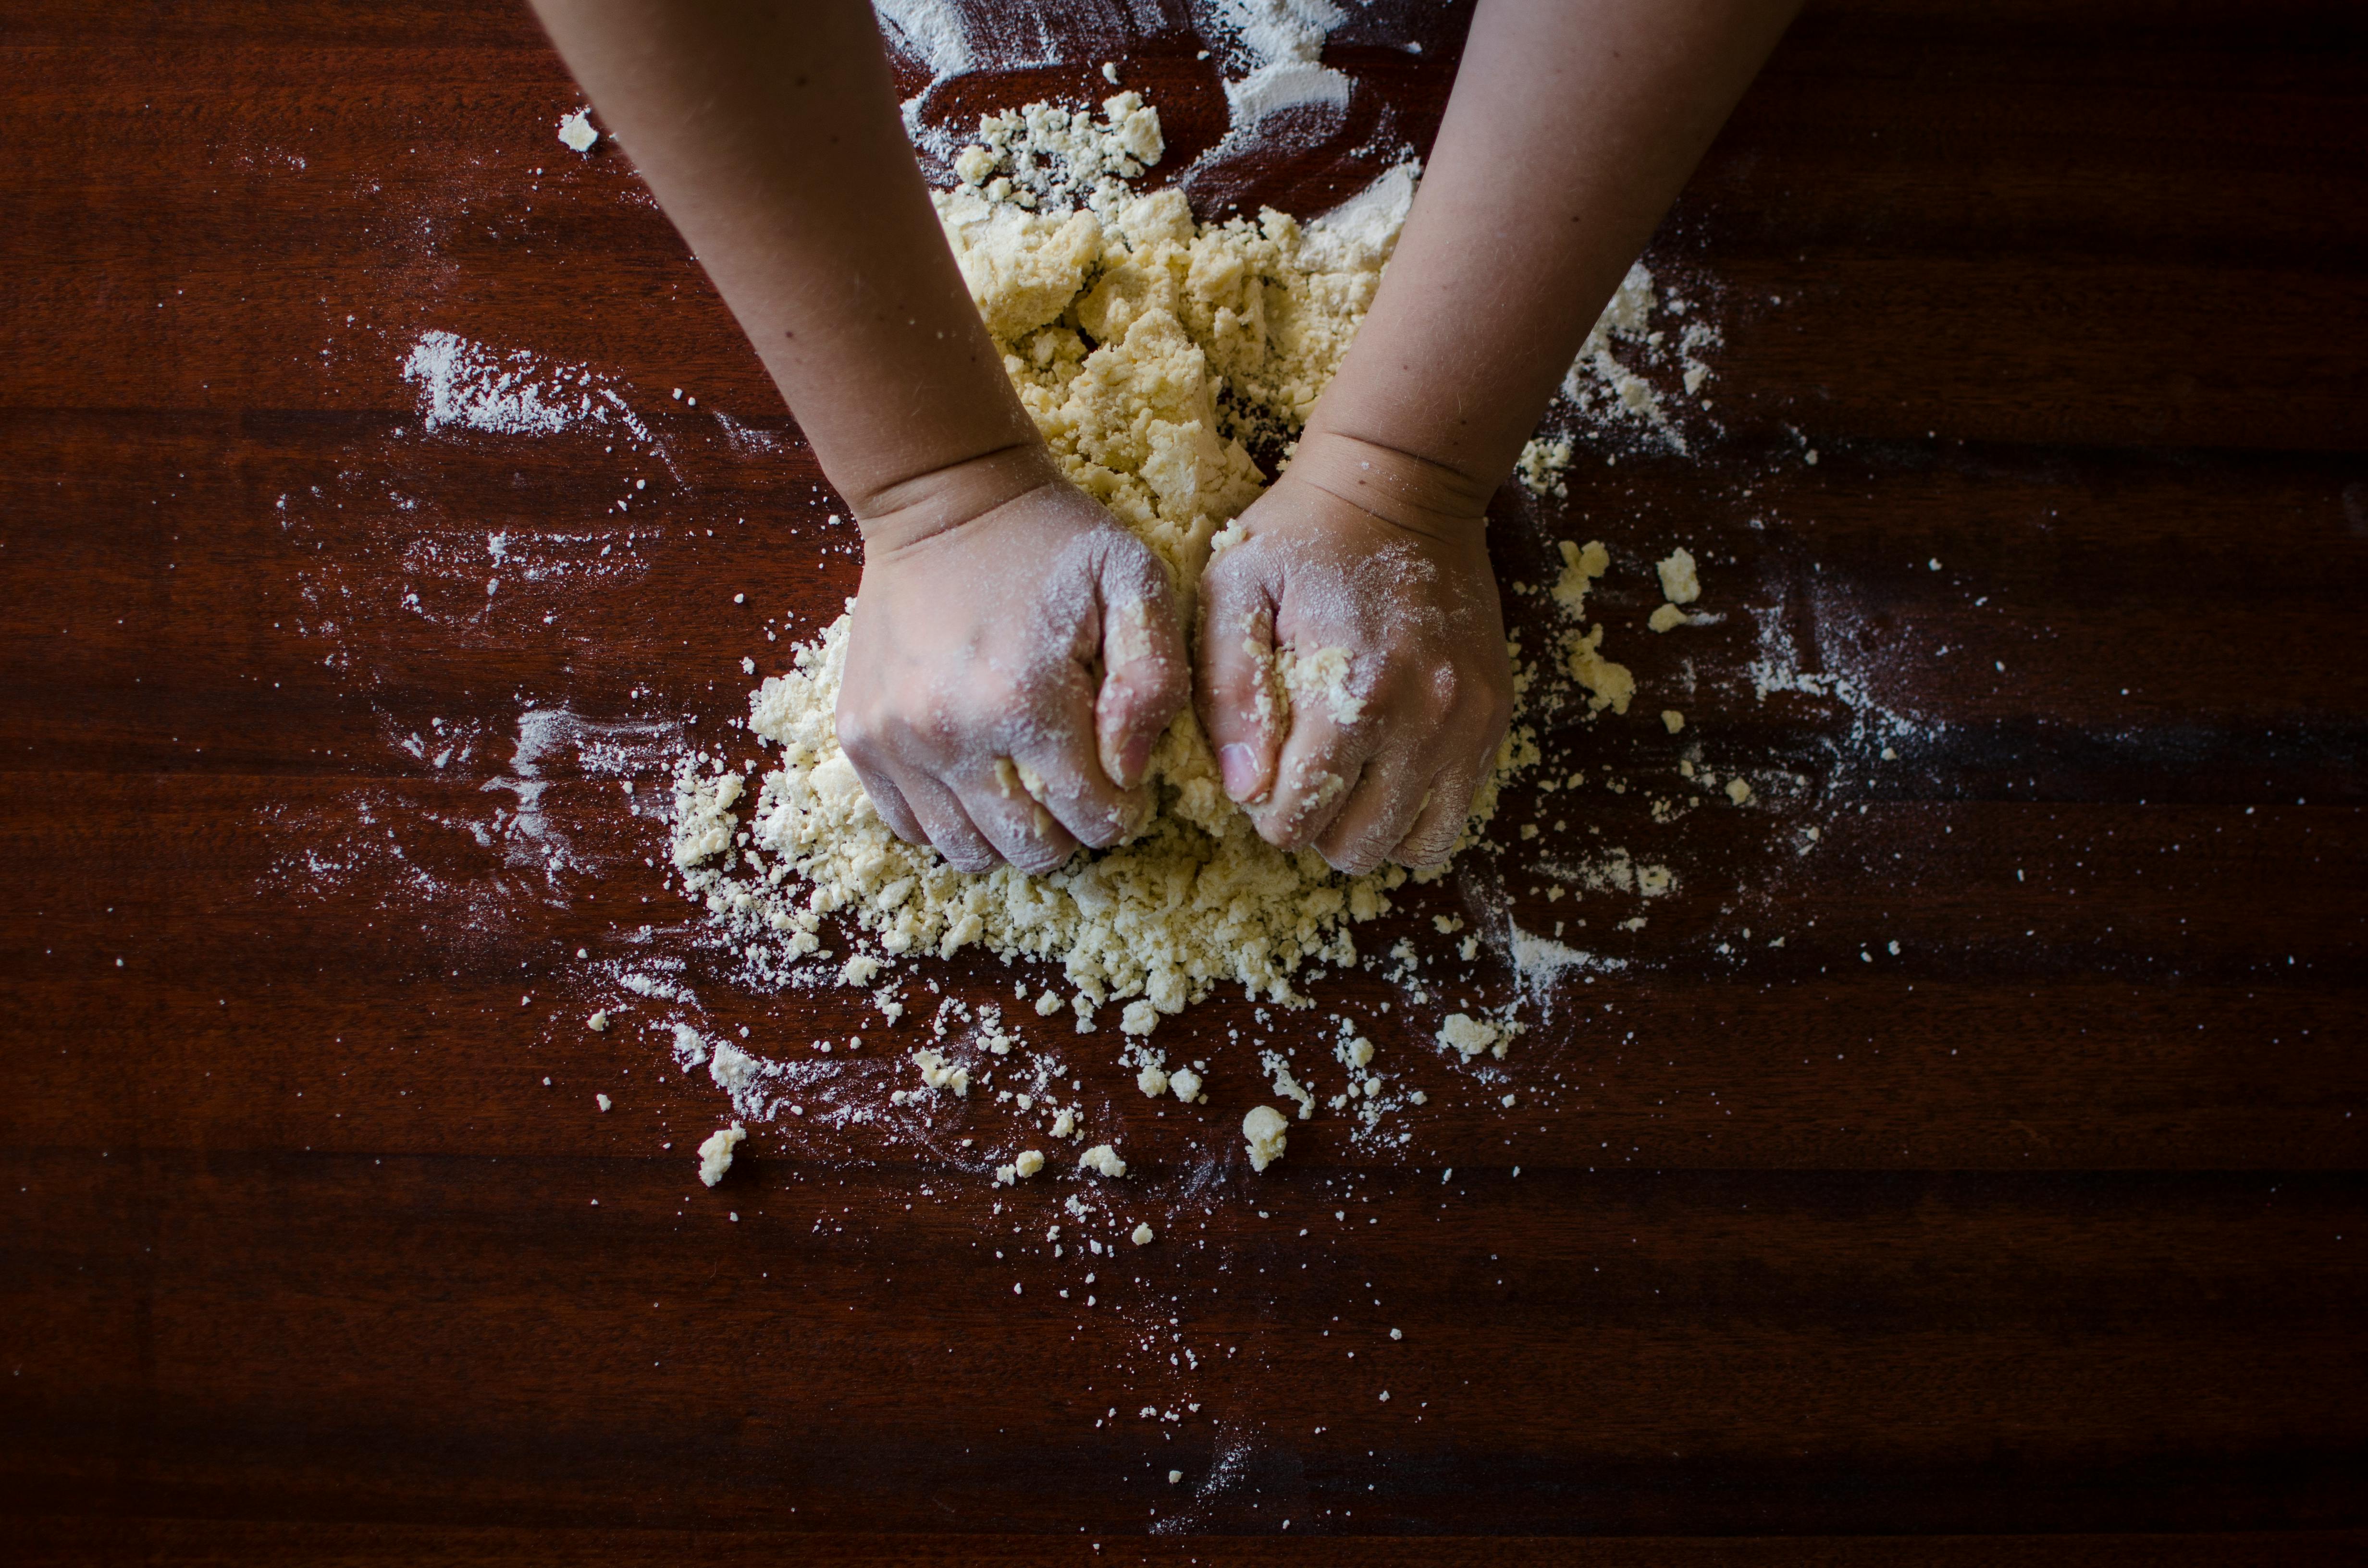 Person mixing dough | Source: Pexels